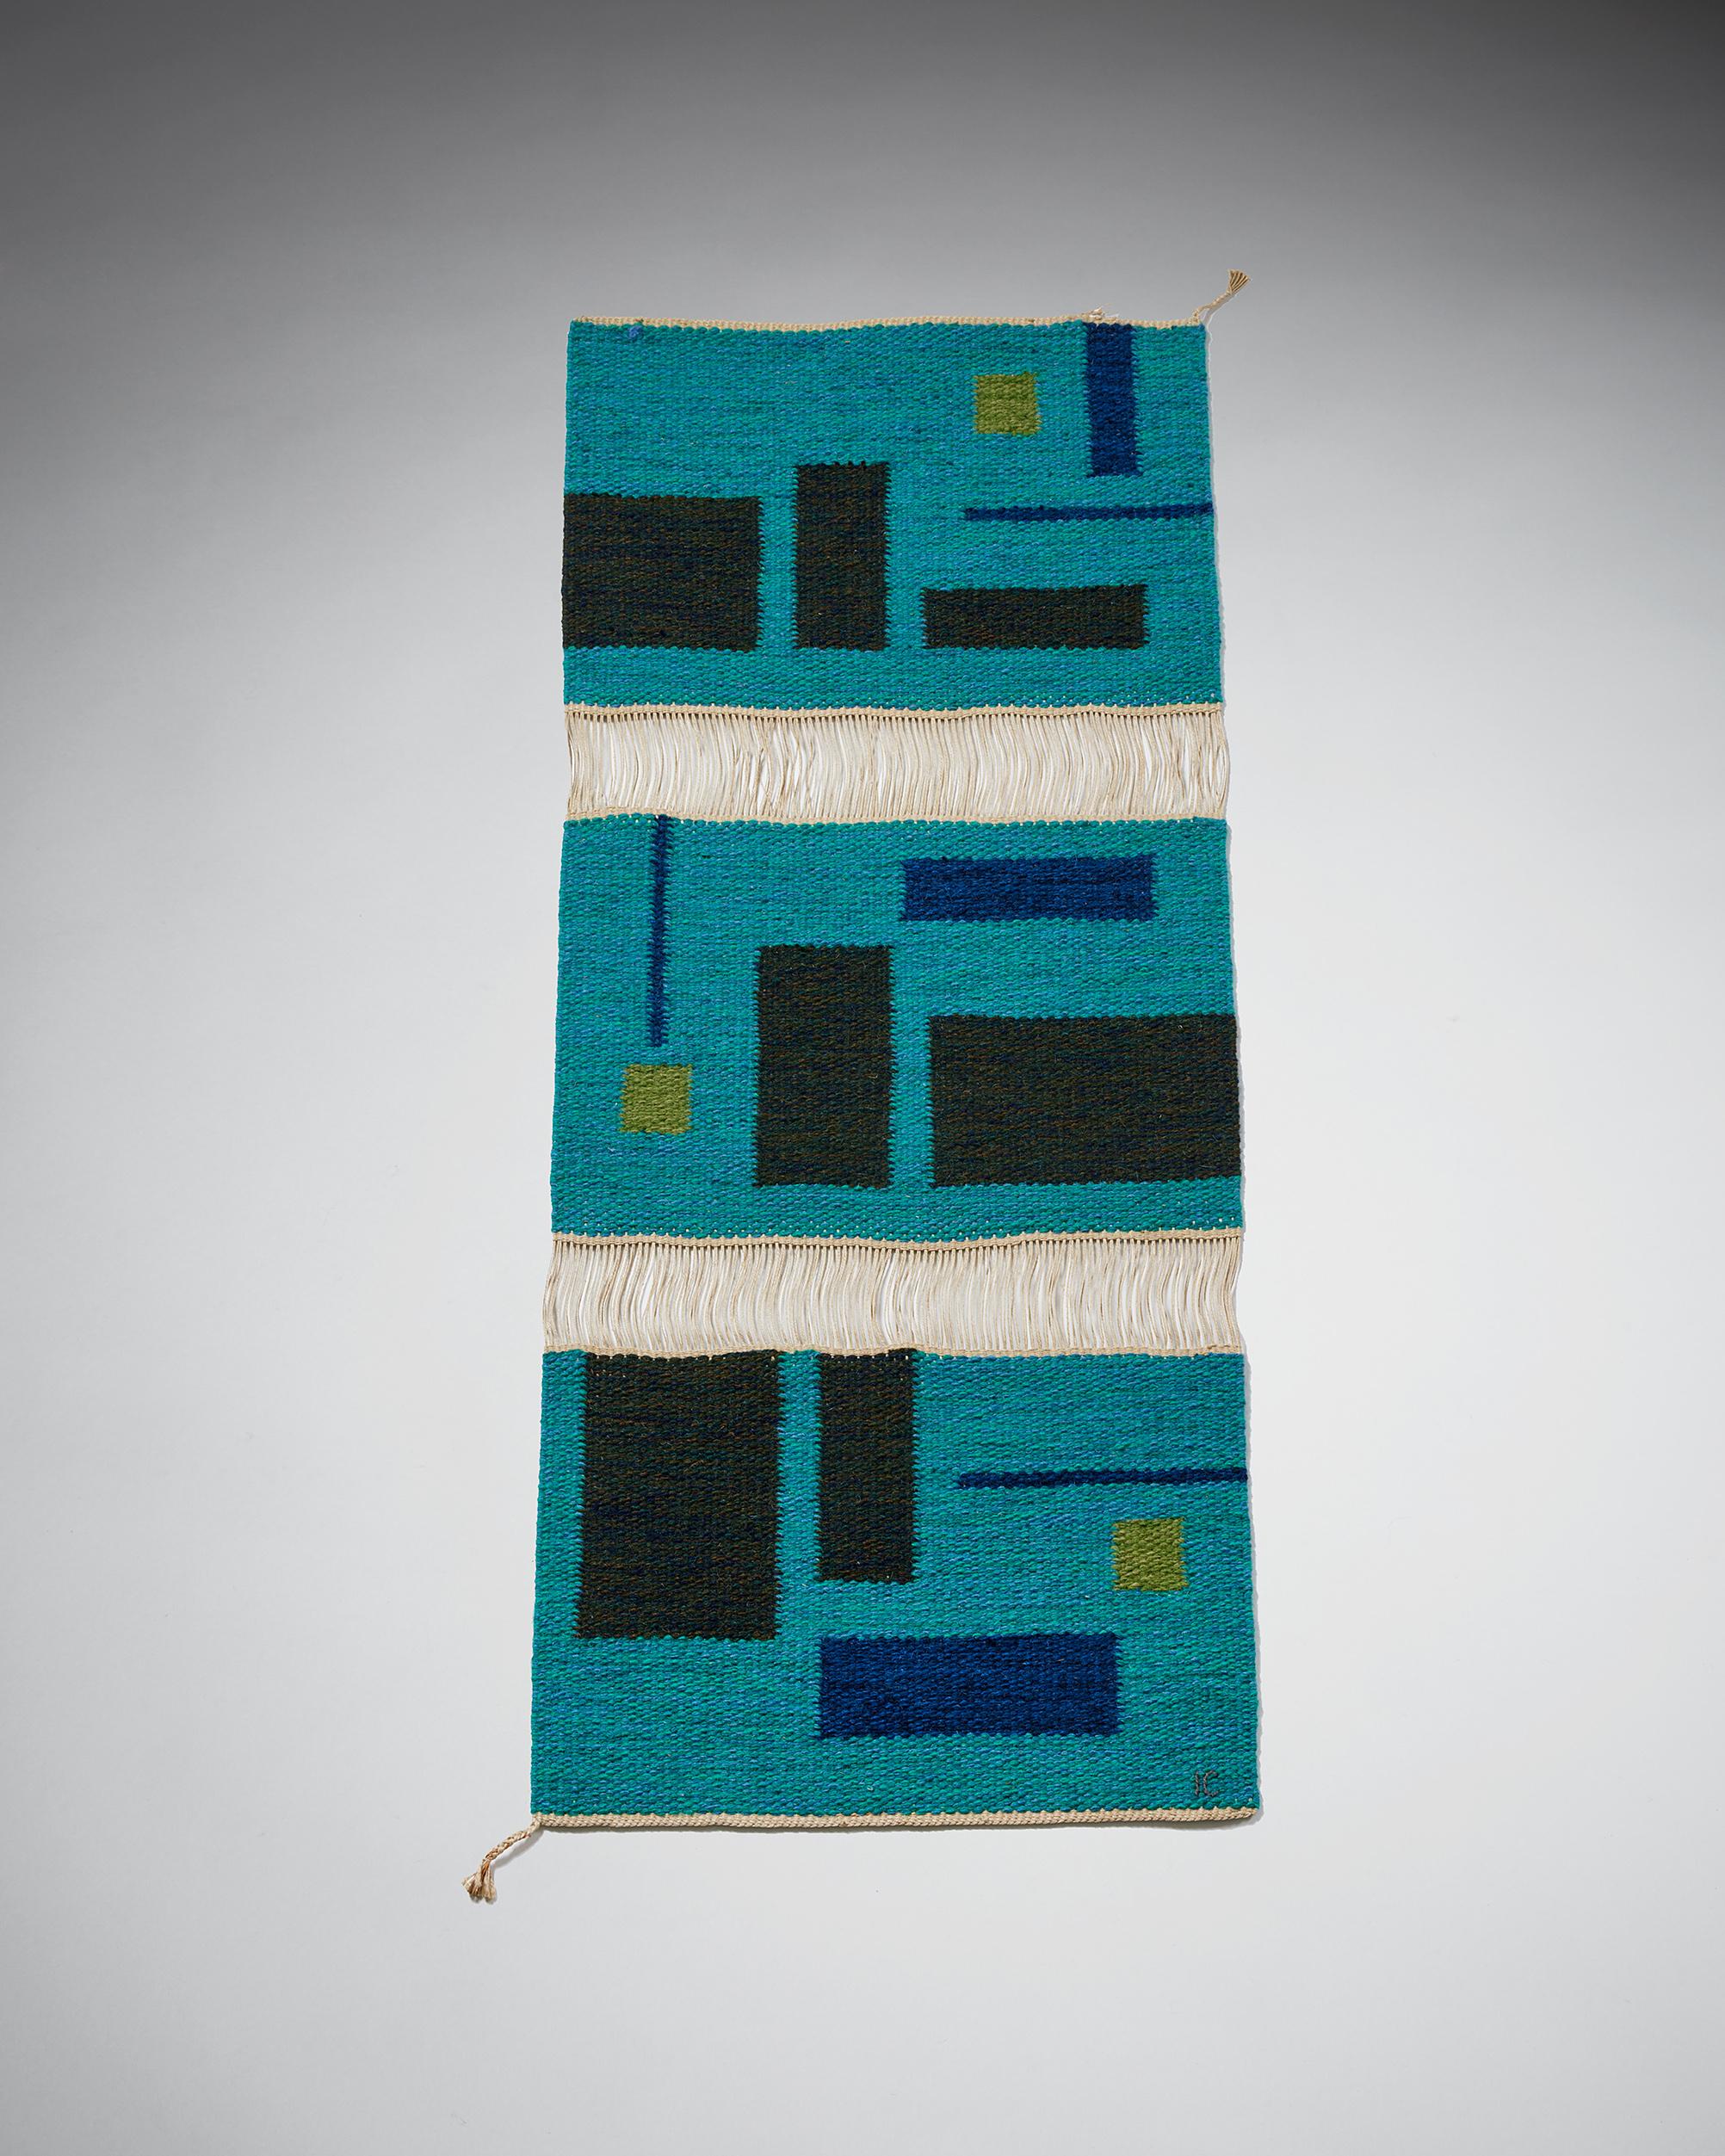 Tapestry ‘Vävnad’ designed by Ingemar Callenberg for Gammelstads Handväveri AB,
Sweden, 1950s.

Wool.

Measures: L: 118 cm
W: 49 cm.